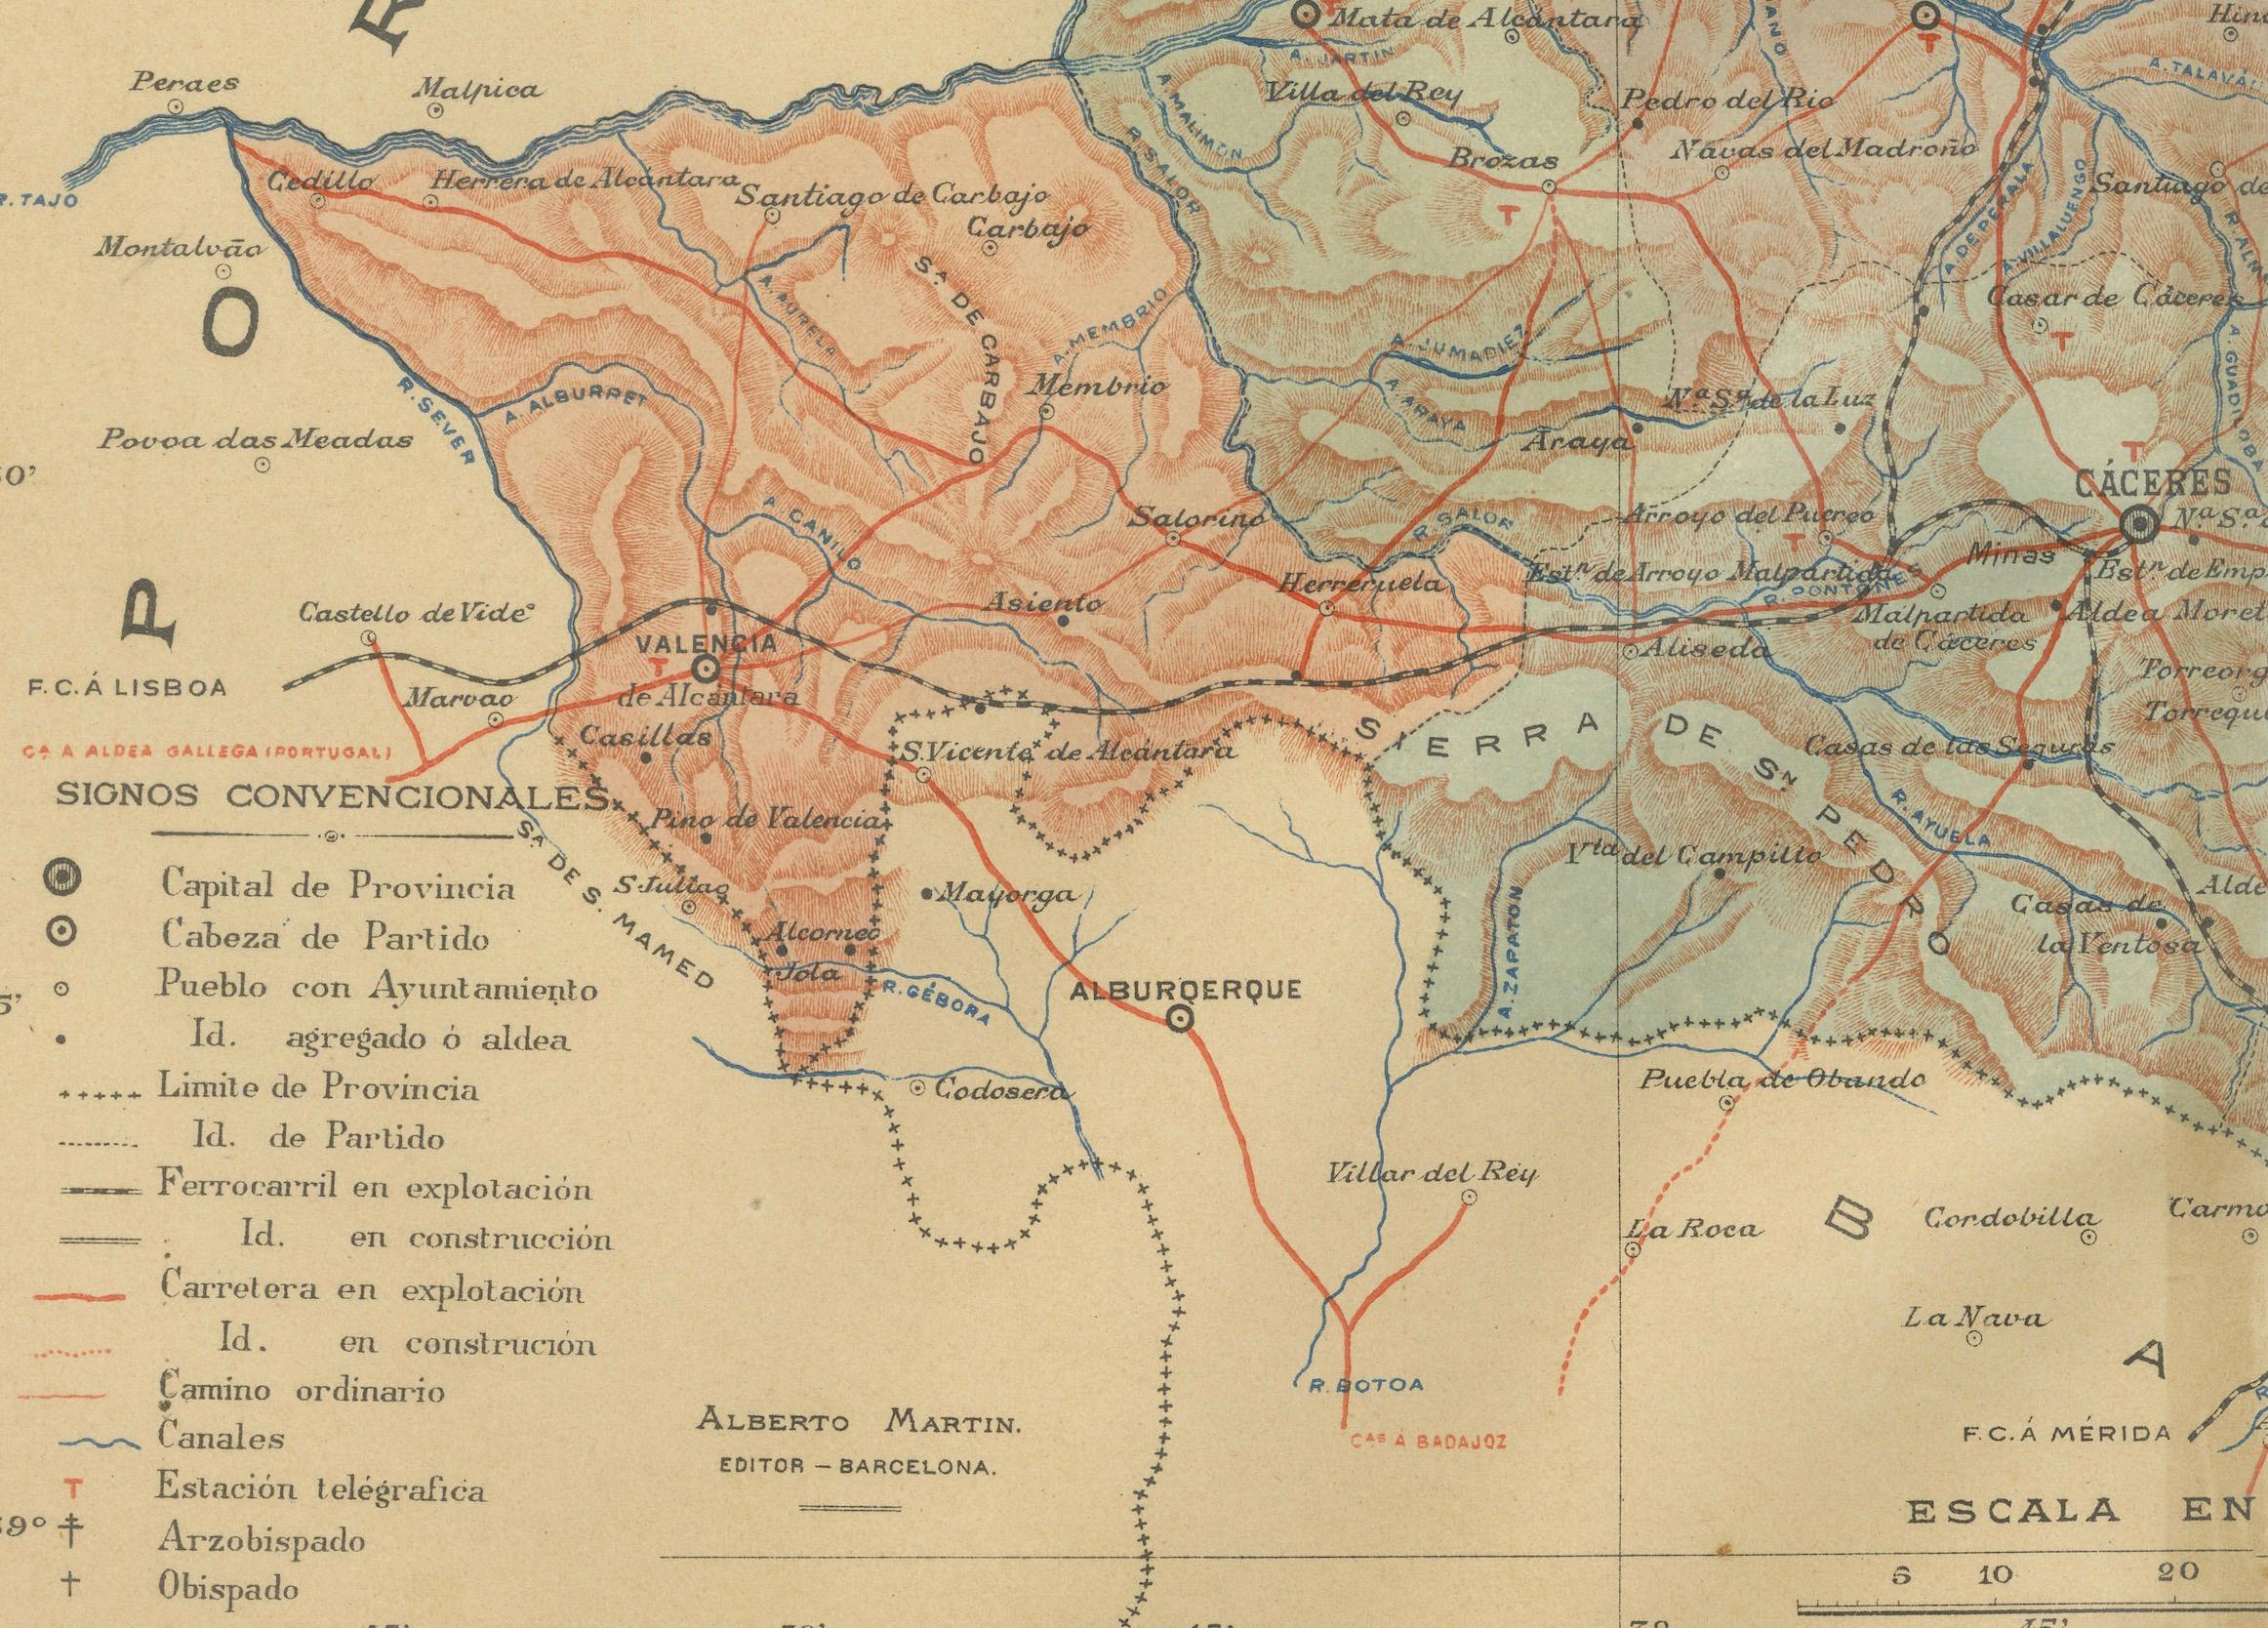 La carte représente la province de Cáceres en Espagne, datée de 1901. Les principales caractéristiques de la carte sont les suivantes

La carte présente des courbes de niveau détaillées indiquant la diversité du terrain, dont la partie nord de la